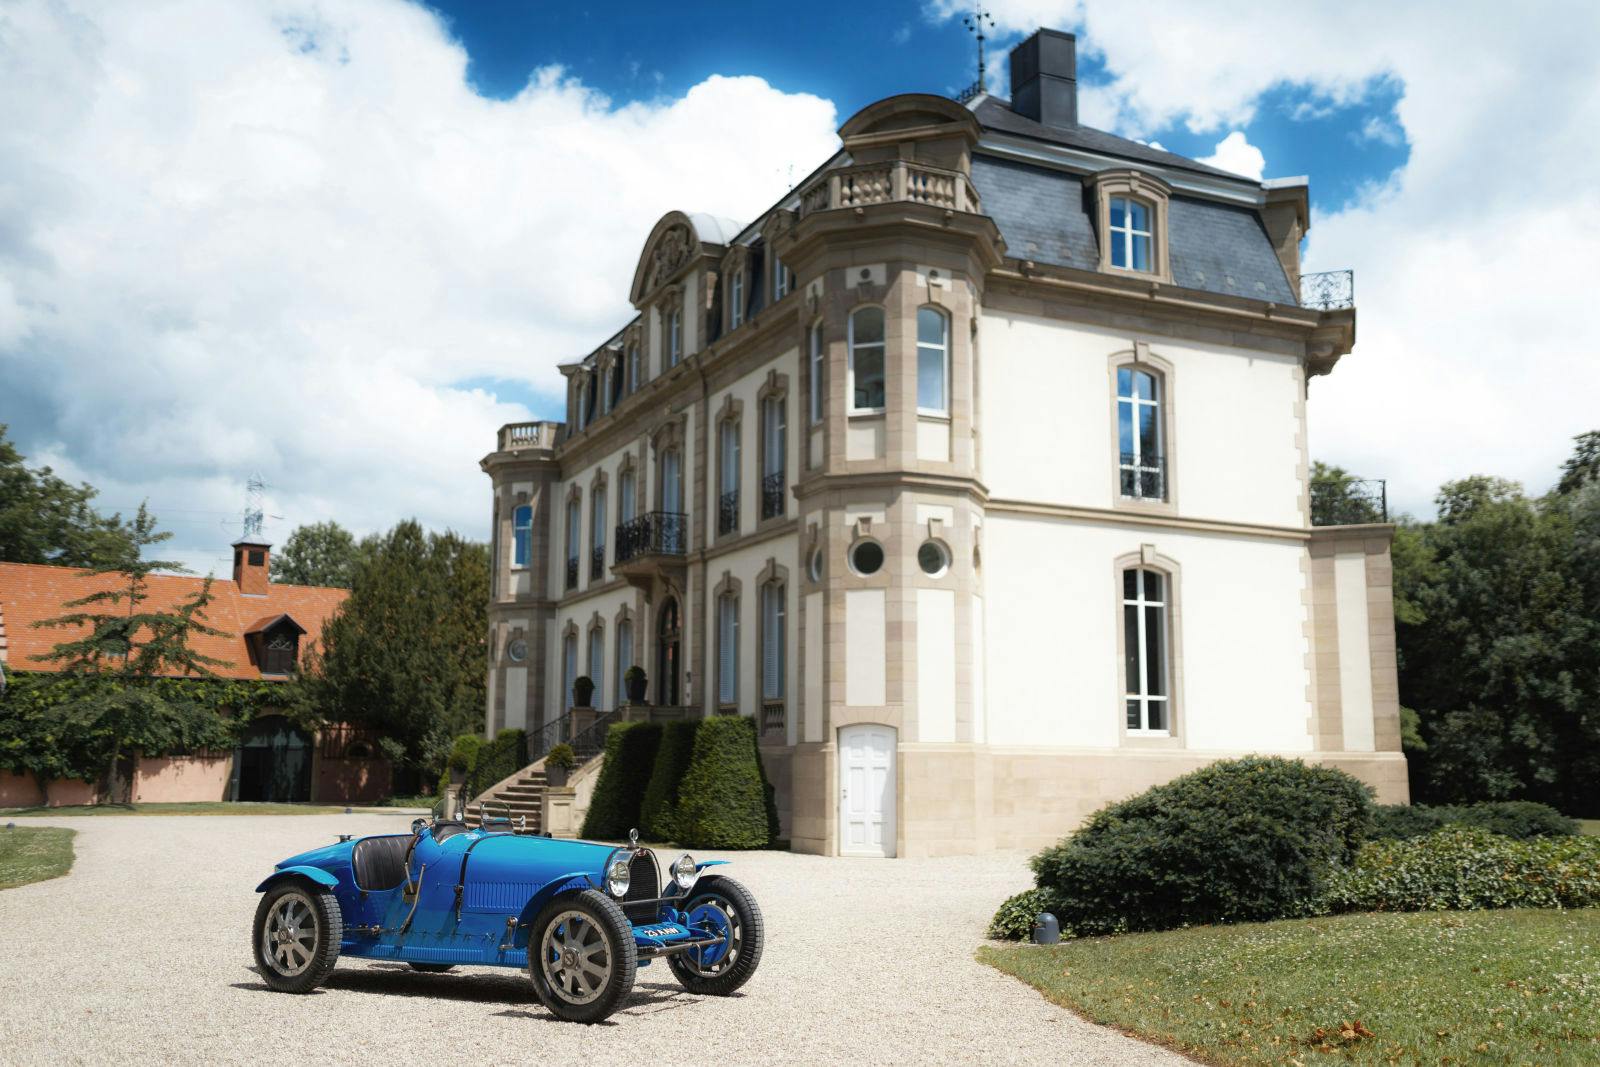 Viele Bugatti Type 35, trugen einen leuchtenden Blauton, den die Zuschauer sofort erkannten.